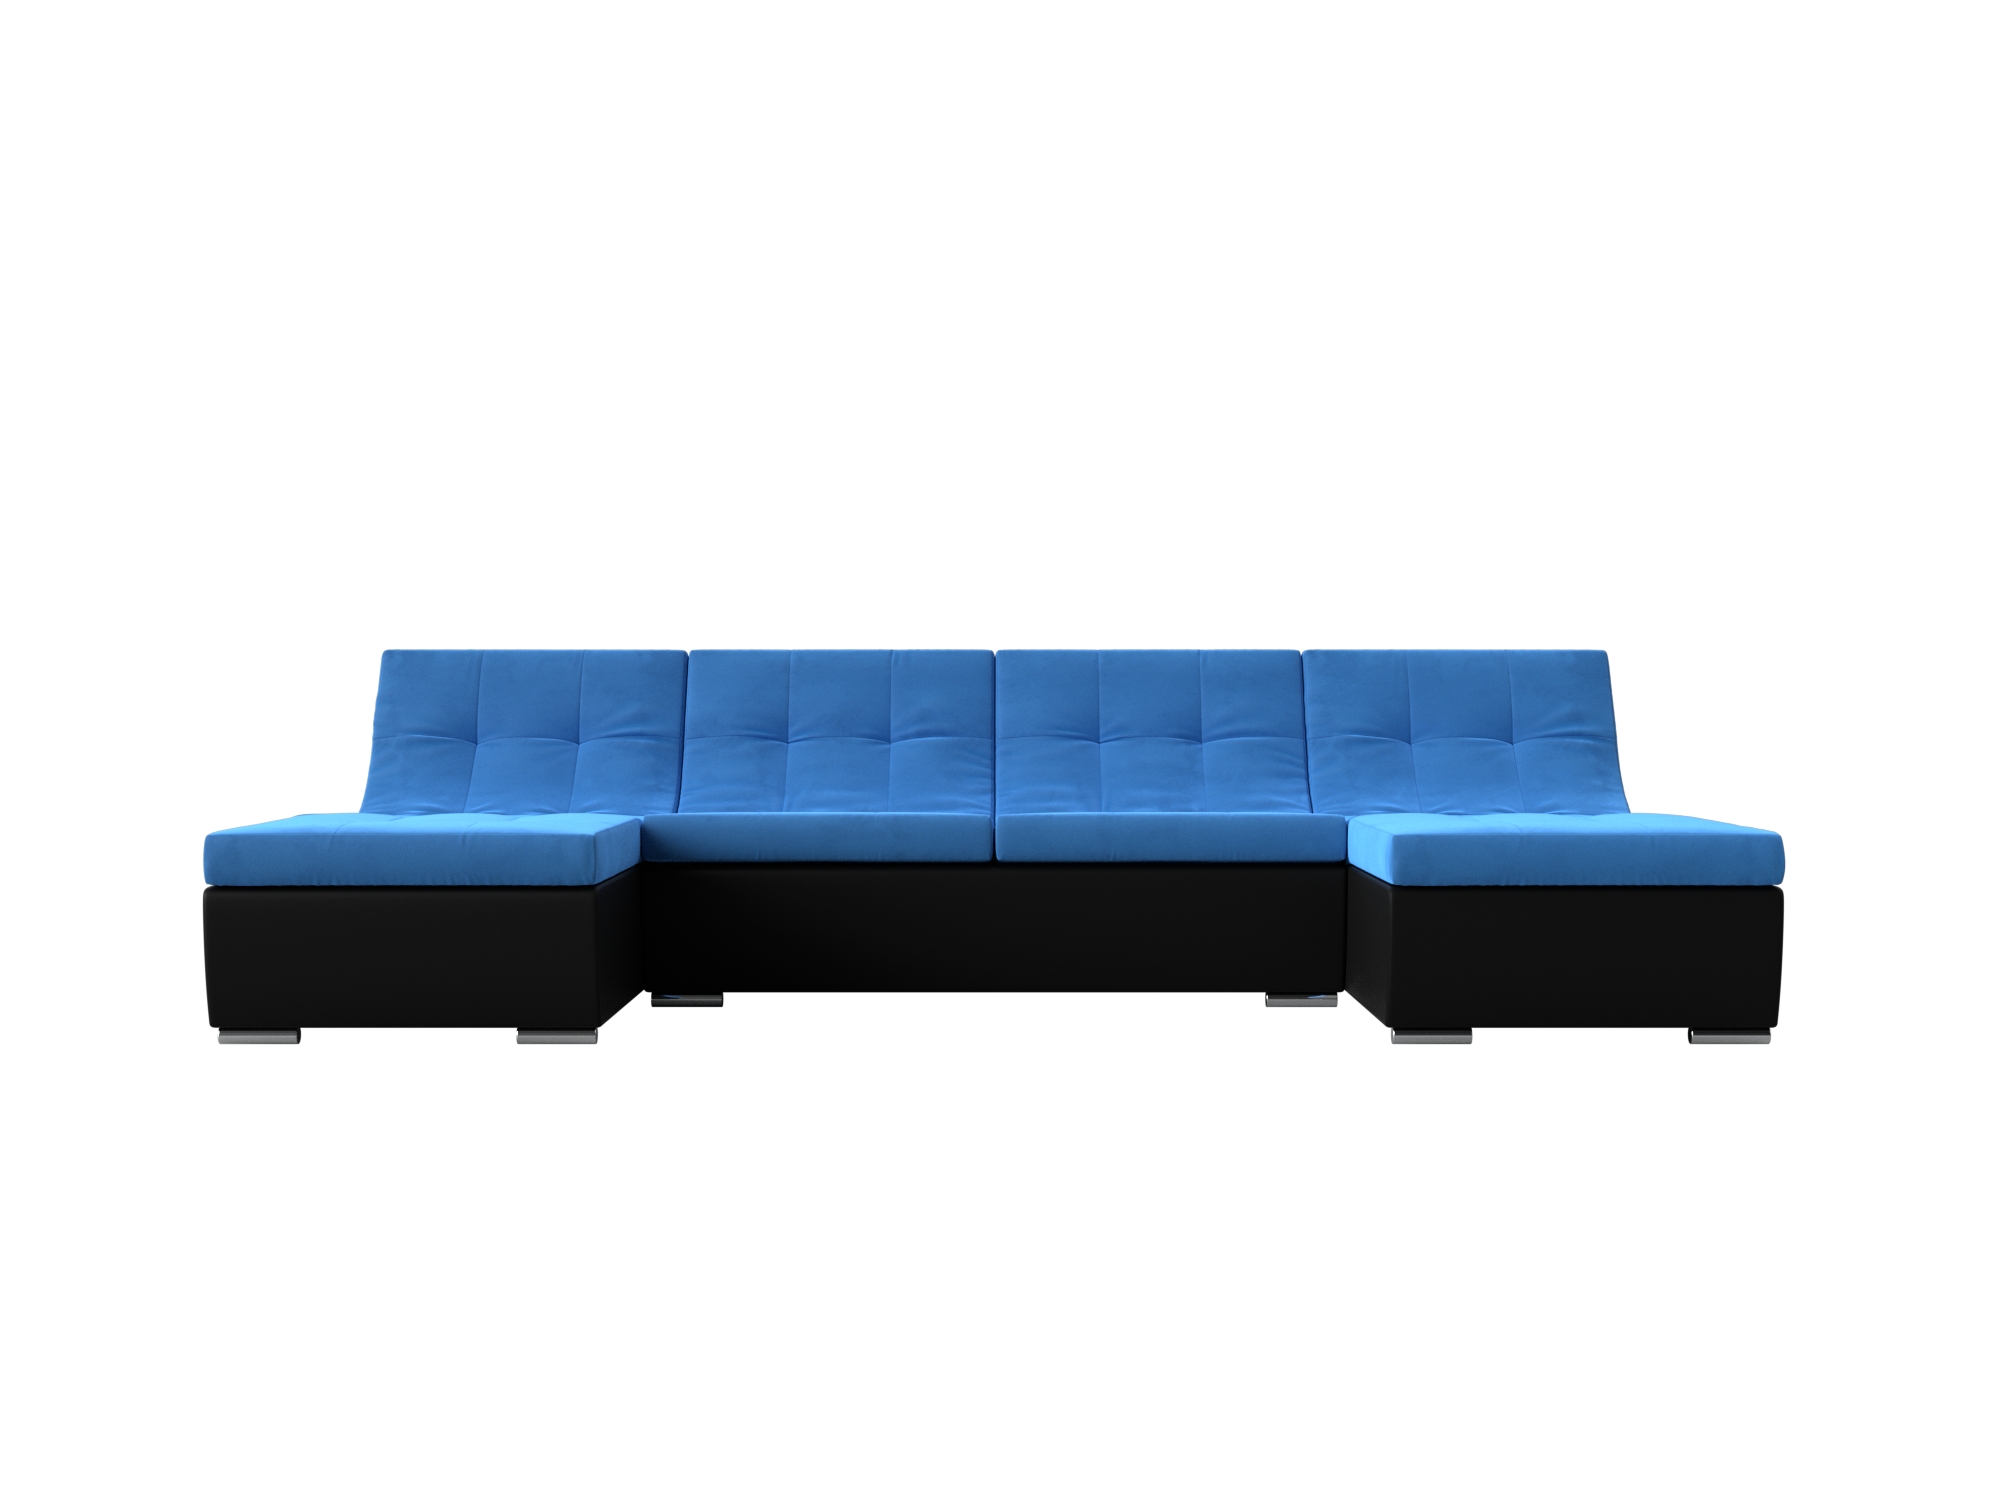 П-образный модульный диван Монреаль MebelVia Голубой, Черный, Велюр, Экокожа, ЛДСП п образный модульный диван монреаль long mebelvia голубой черный велюр экокожа лдсп